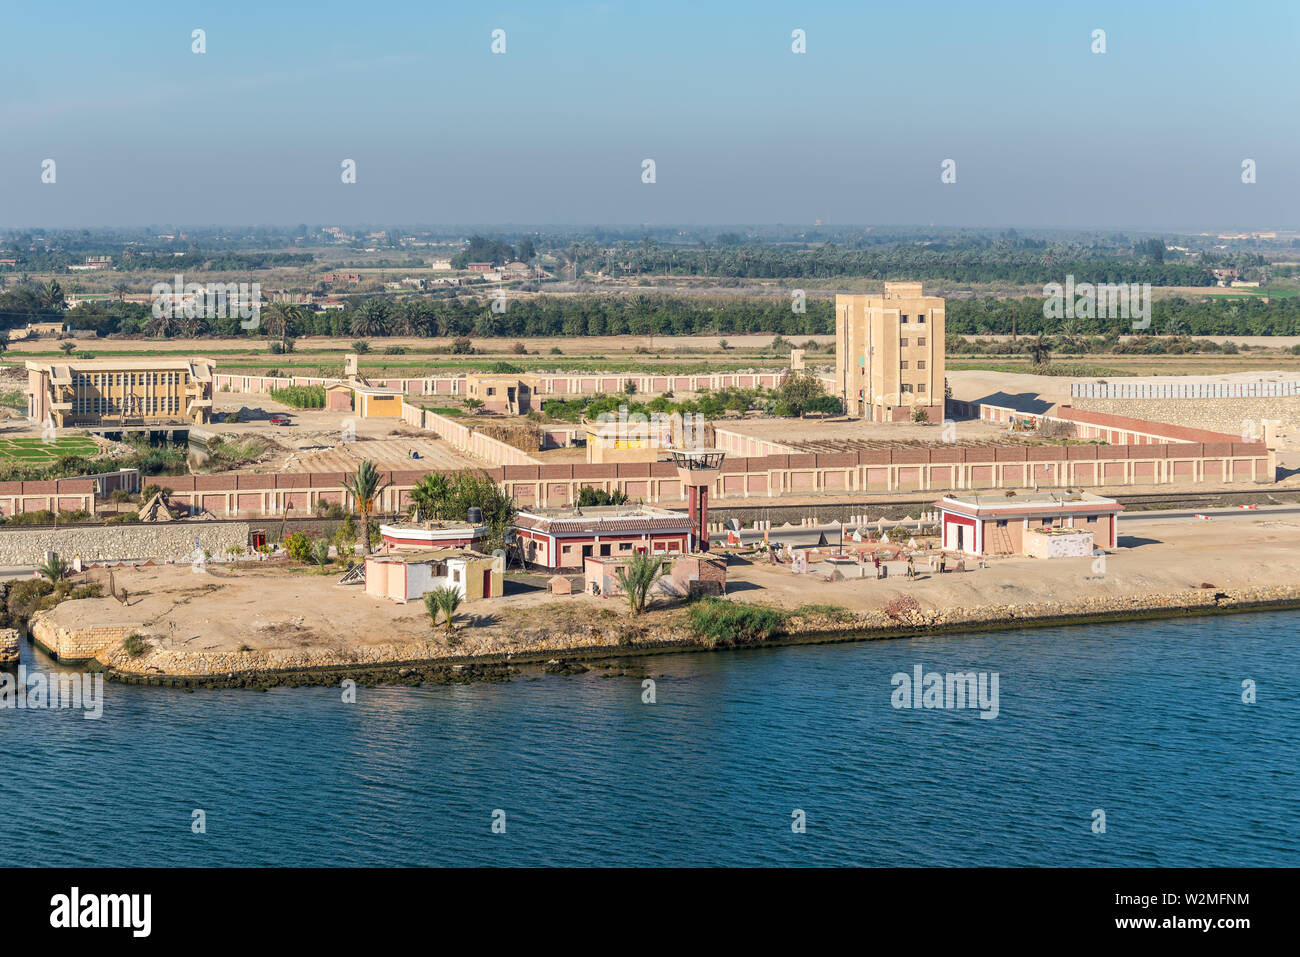 El Qantara, Egitto - 5 Novembre 2017: gli edifici e i campi sulla riva del canale di Suez nei pressi di El Qantara, Egitto. Tipico paesaggio. Foto Stock